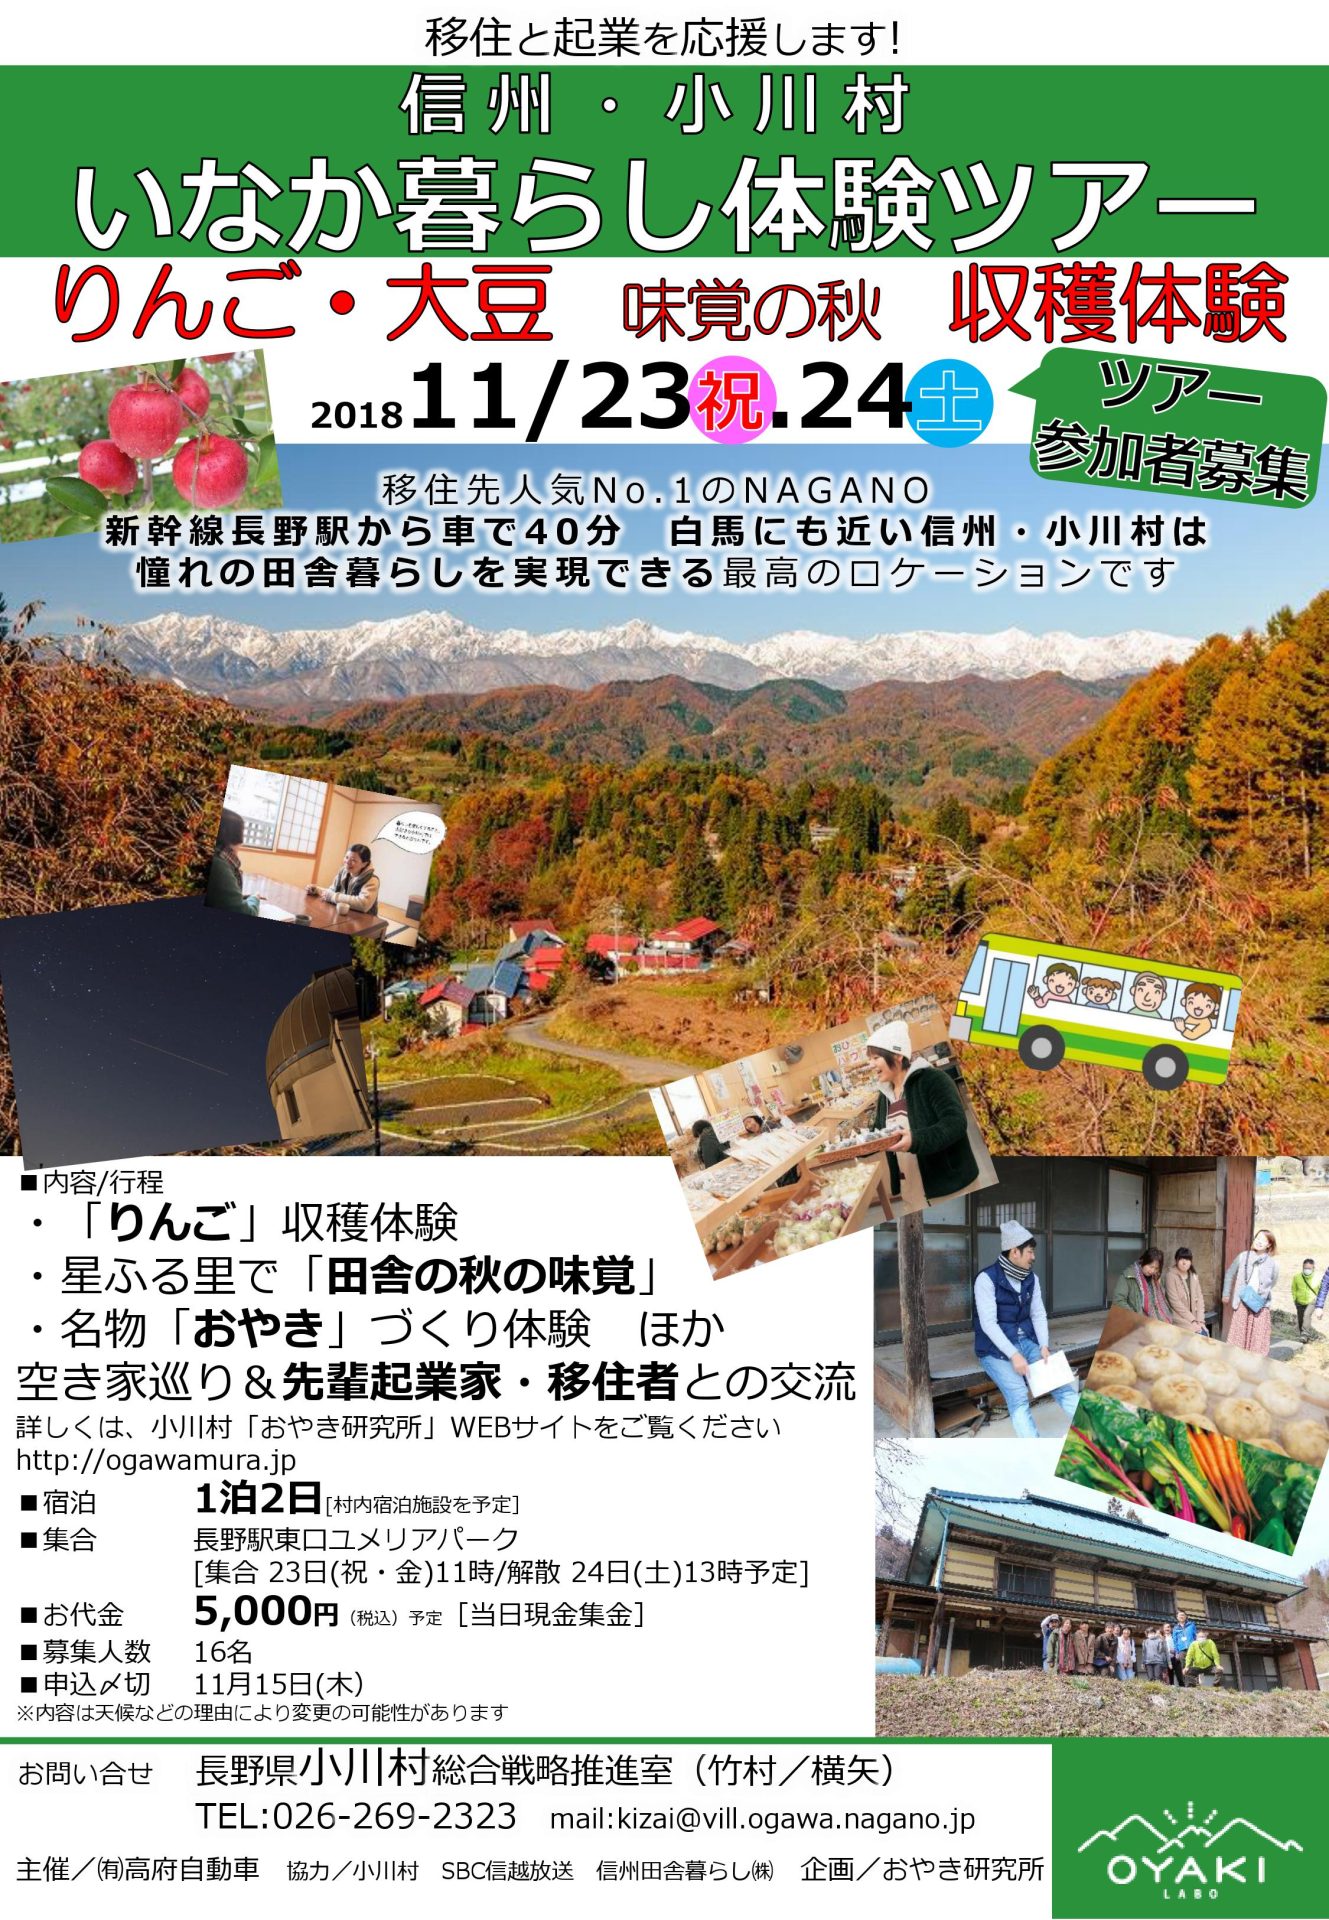 小川村いなか暮らし体験ツアー〔11/15締切〕 | 移住関連イベント情報